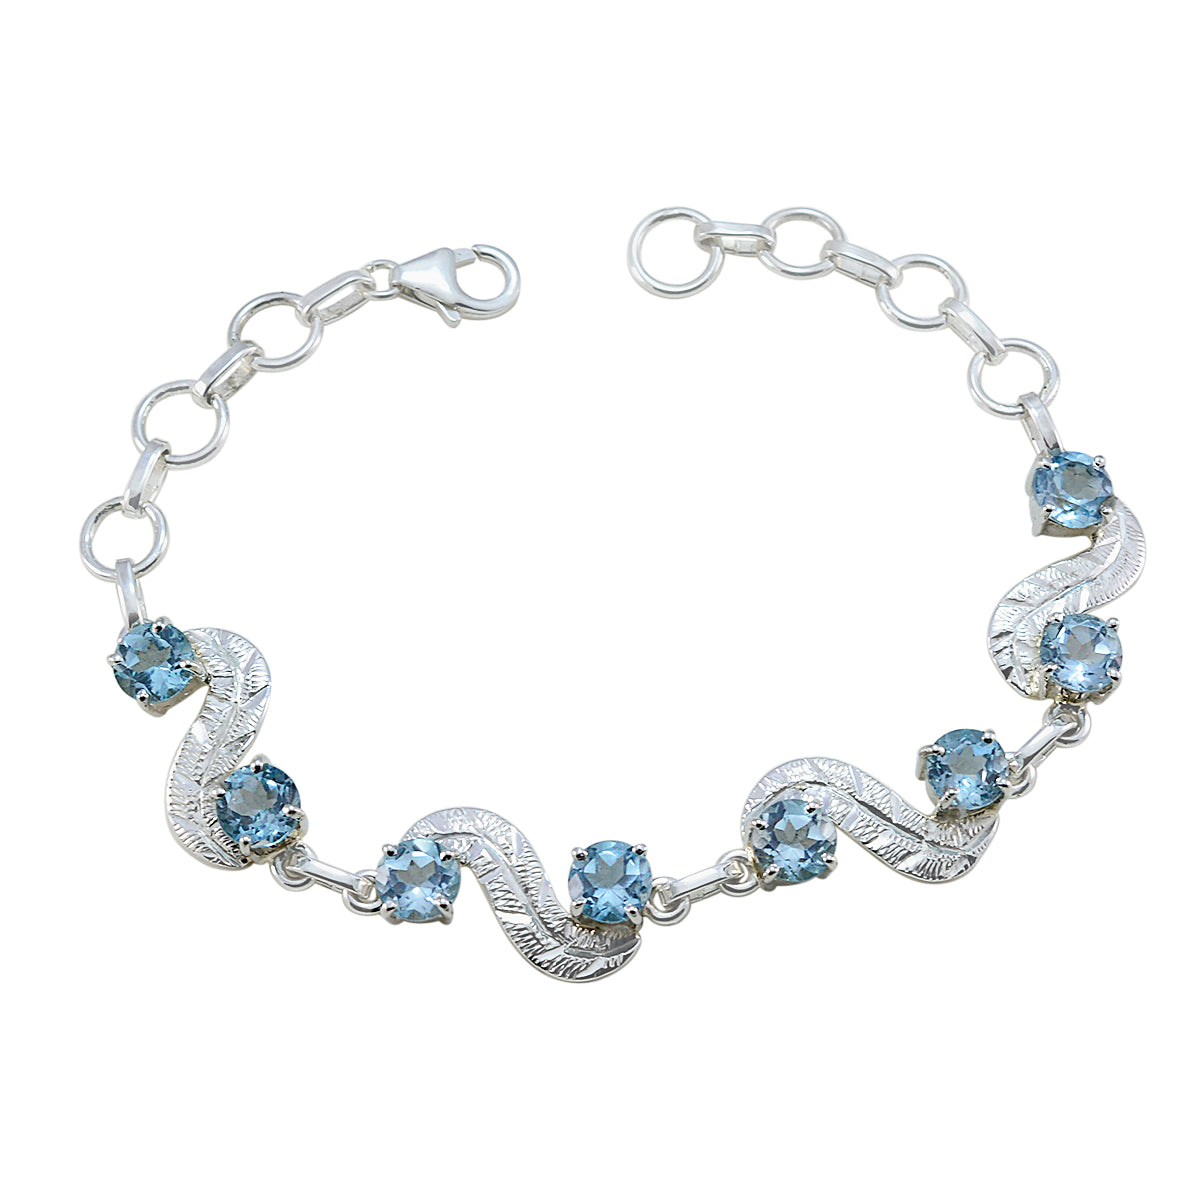 riyo bedårande 925 sterling silver armband för kvinnor blå topas armband stift inställning armband med fisk krok länk armband l storlek 6-8,5 tum.